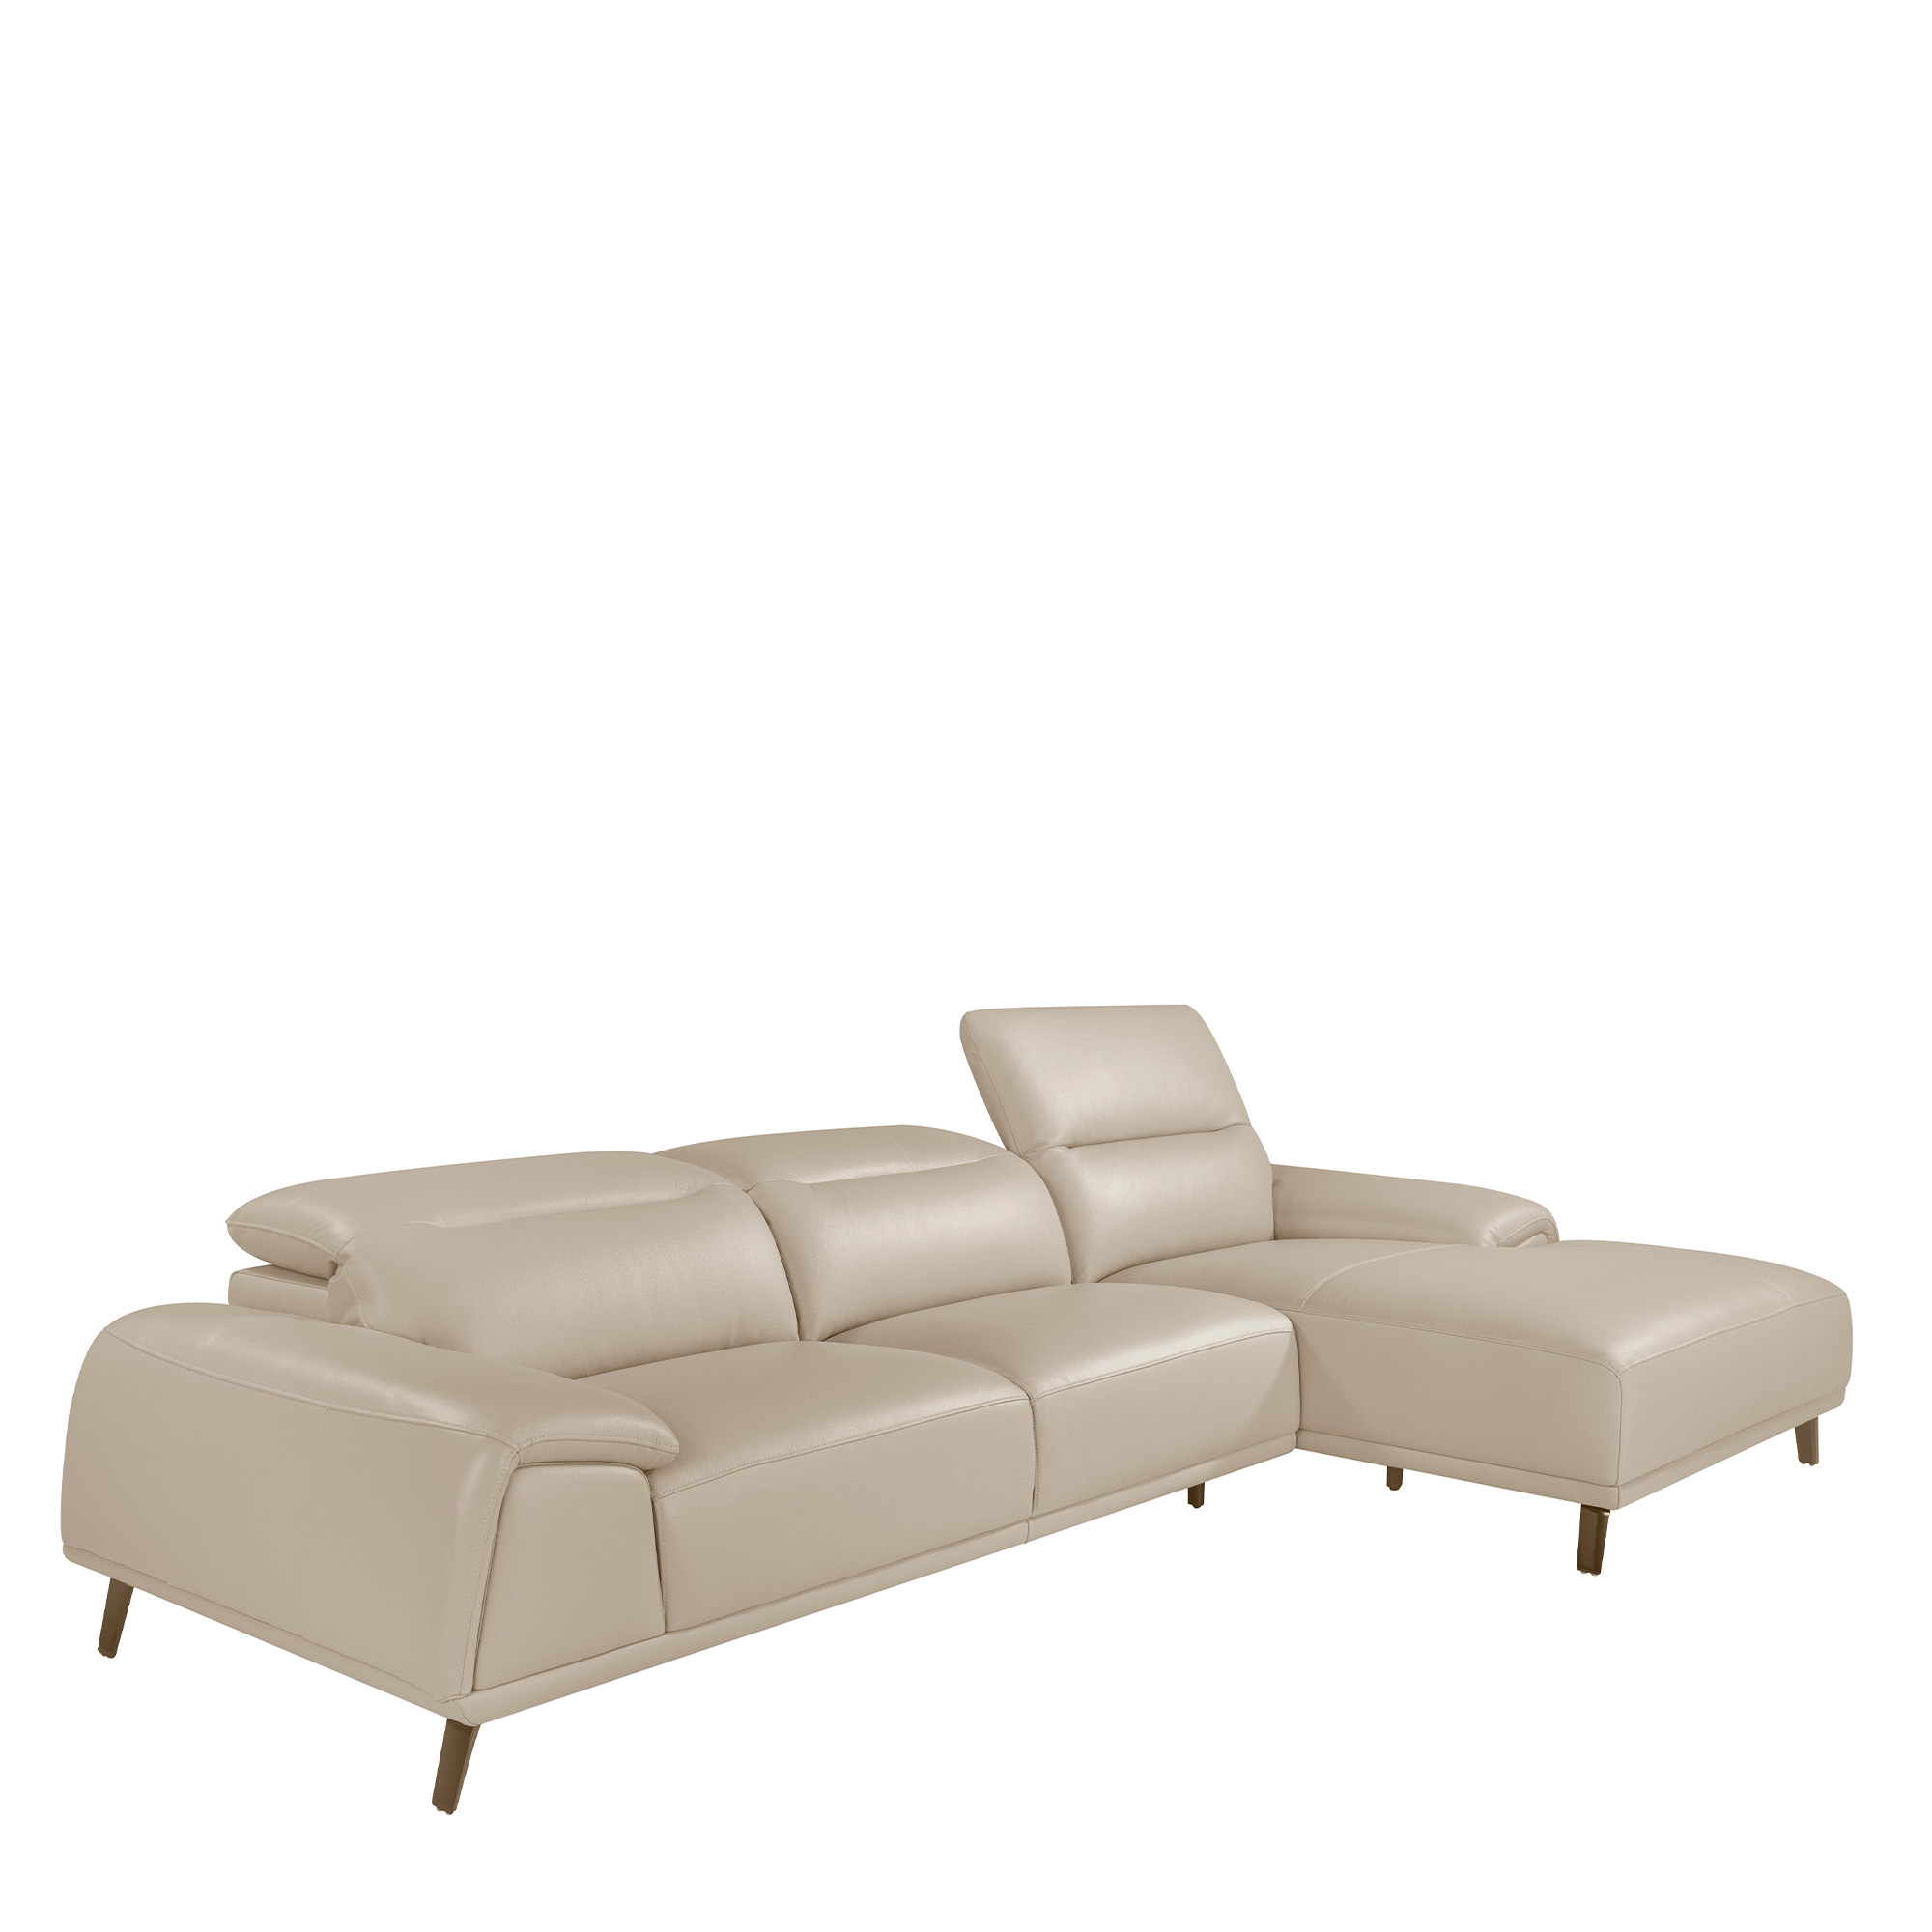 Ledergepolstertes Chaiselongue-Sofa mit gelenkigen Rückenlehnen